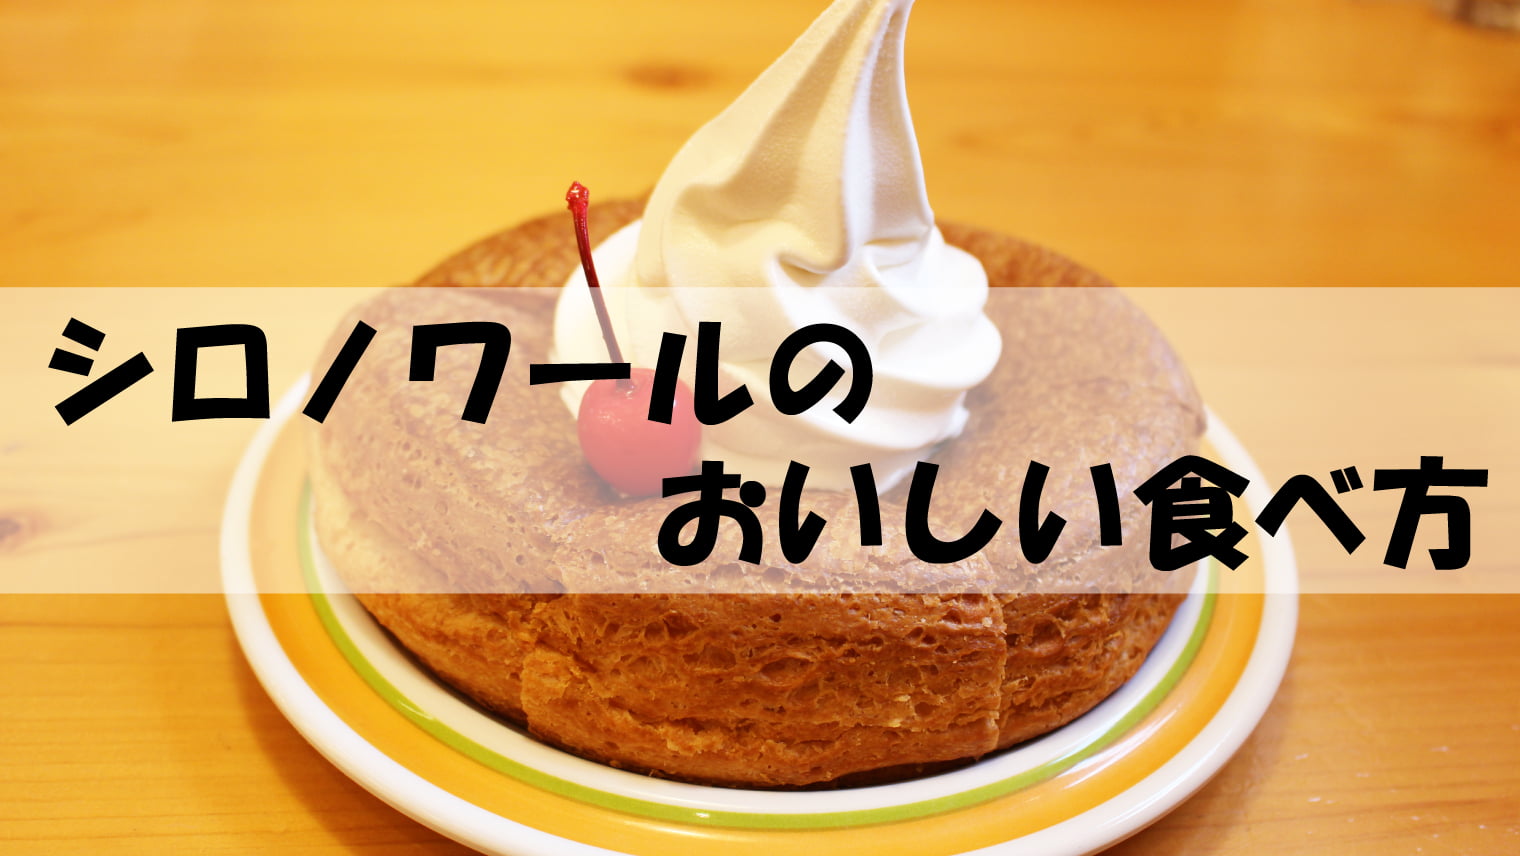 【コメダ珈琲店】名古屋流「シロノワール」のおいしい食べ方